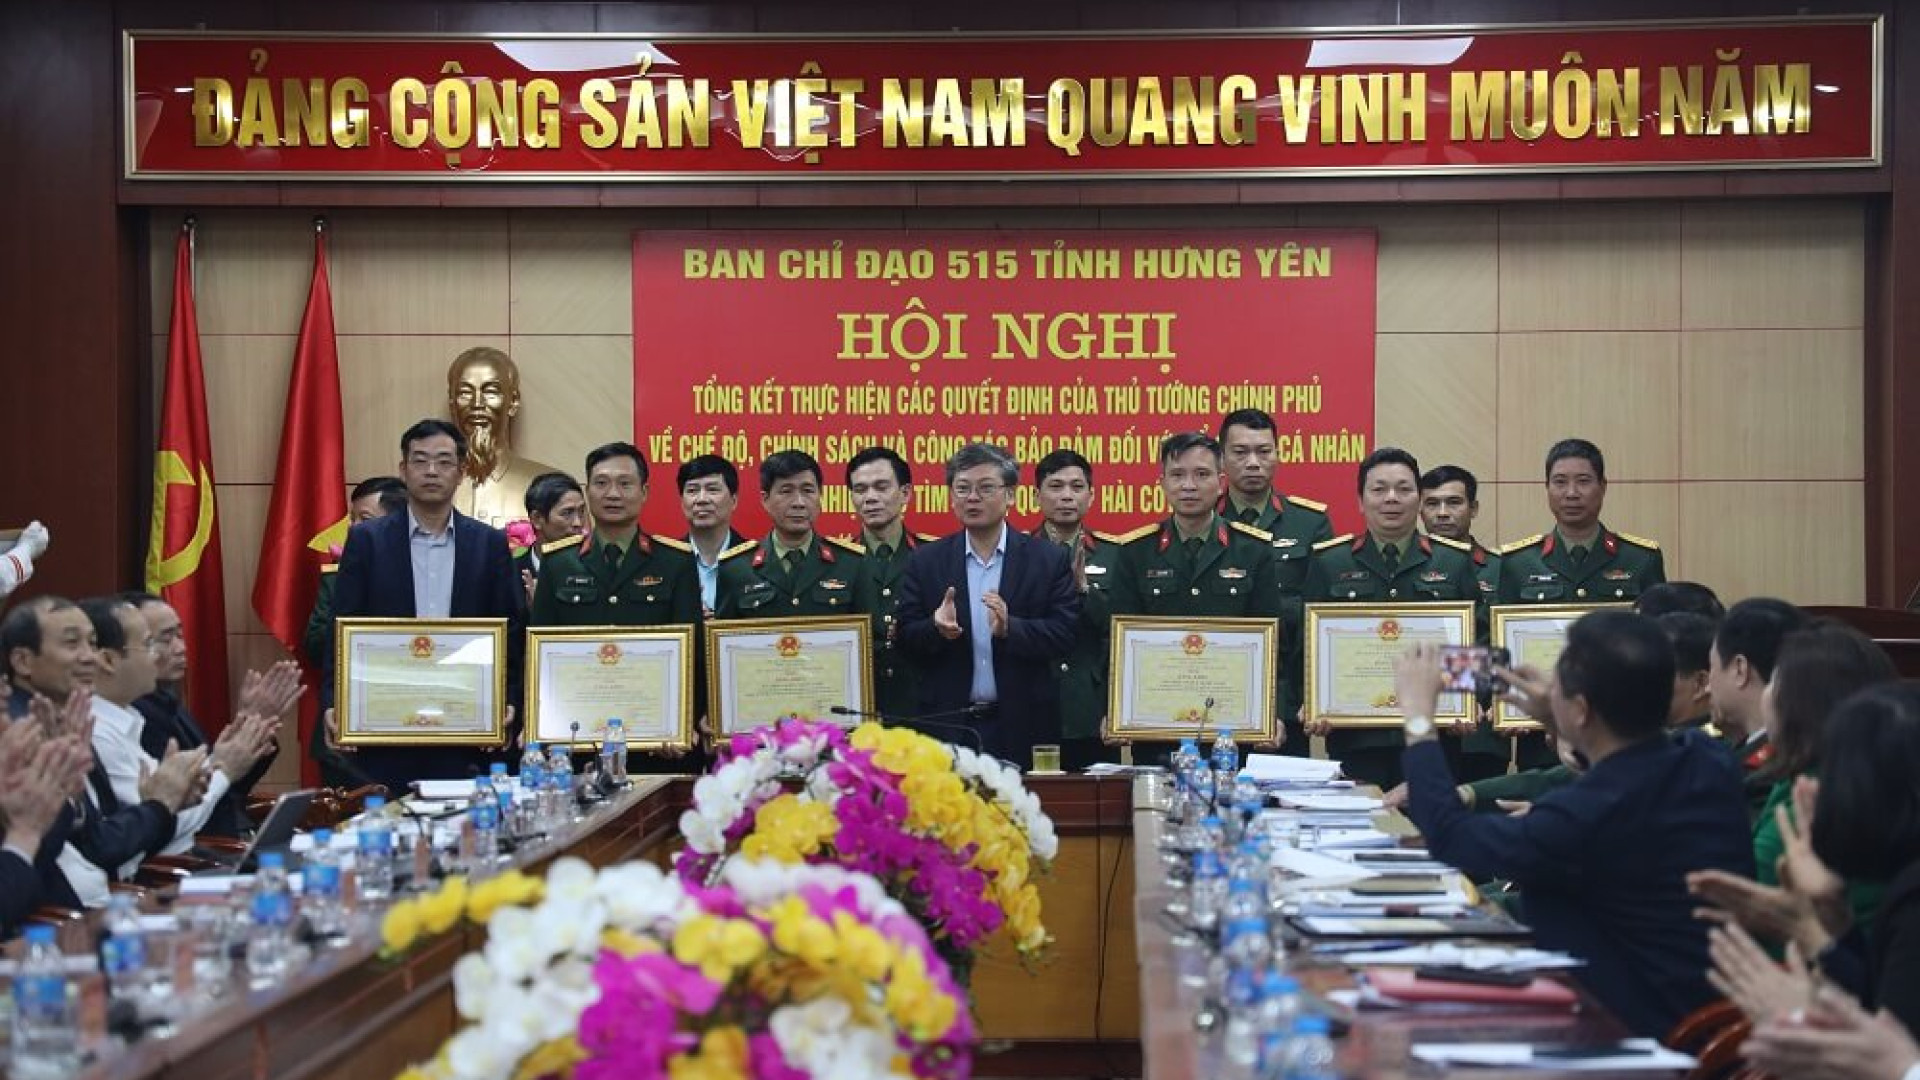 Ban chỉ đạo 515 tỉnh Hưng Yên tổng kết thực hiện các quyết định của Thủ tướng Chính phủ về chế độ, chính sách làm nhiệm vụ tìm kiếm, quy tập hài cốt liệt sĩ.